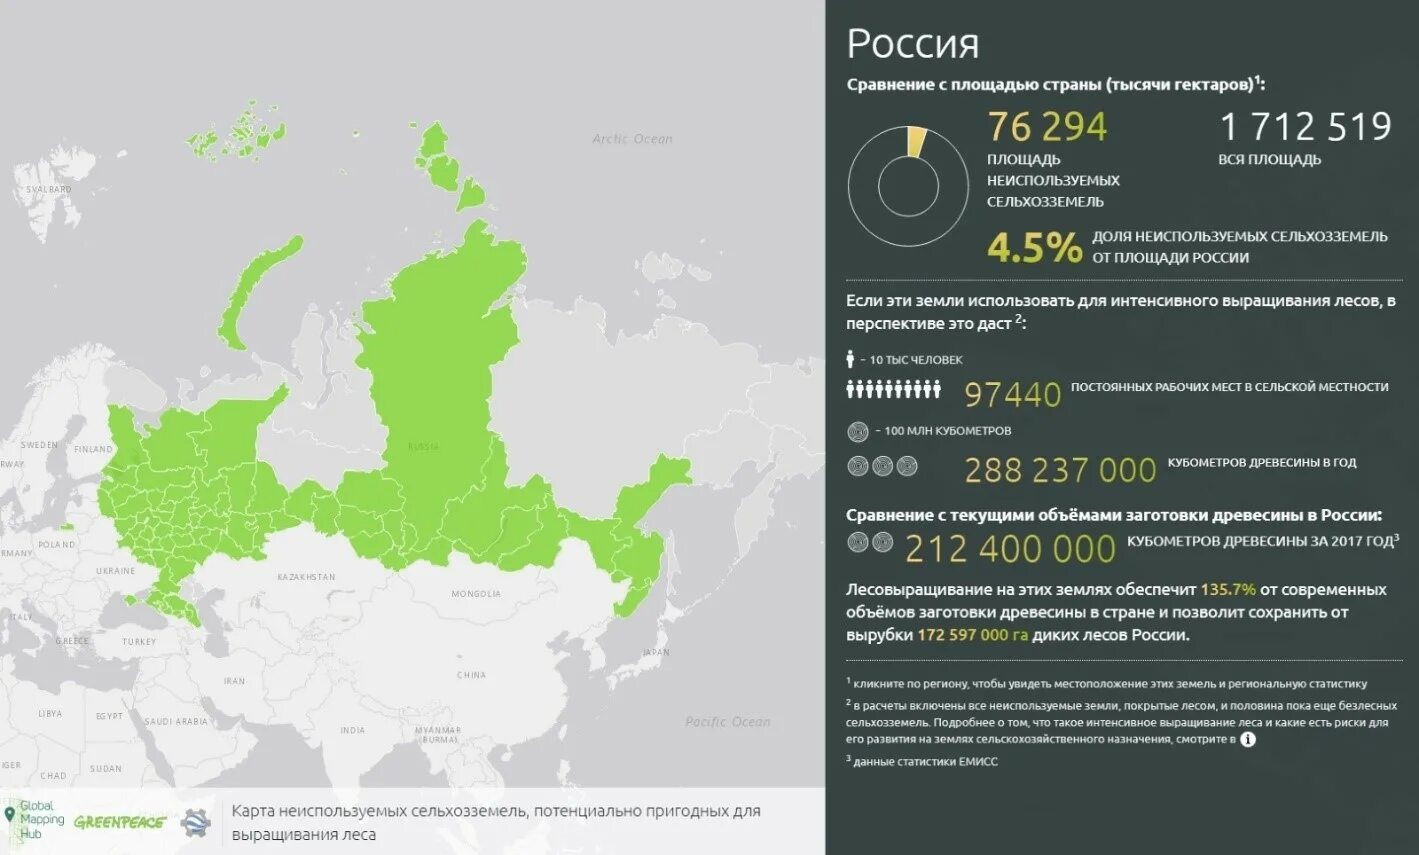 Территория россии составляет 1 3 площади. Территория России площадь в гектарах. Сколько гектаров в России. Карта неиспользуемых сельхозземель России. 1 Млн гектар на карте.